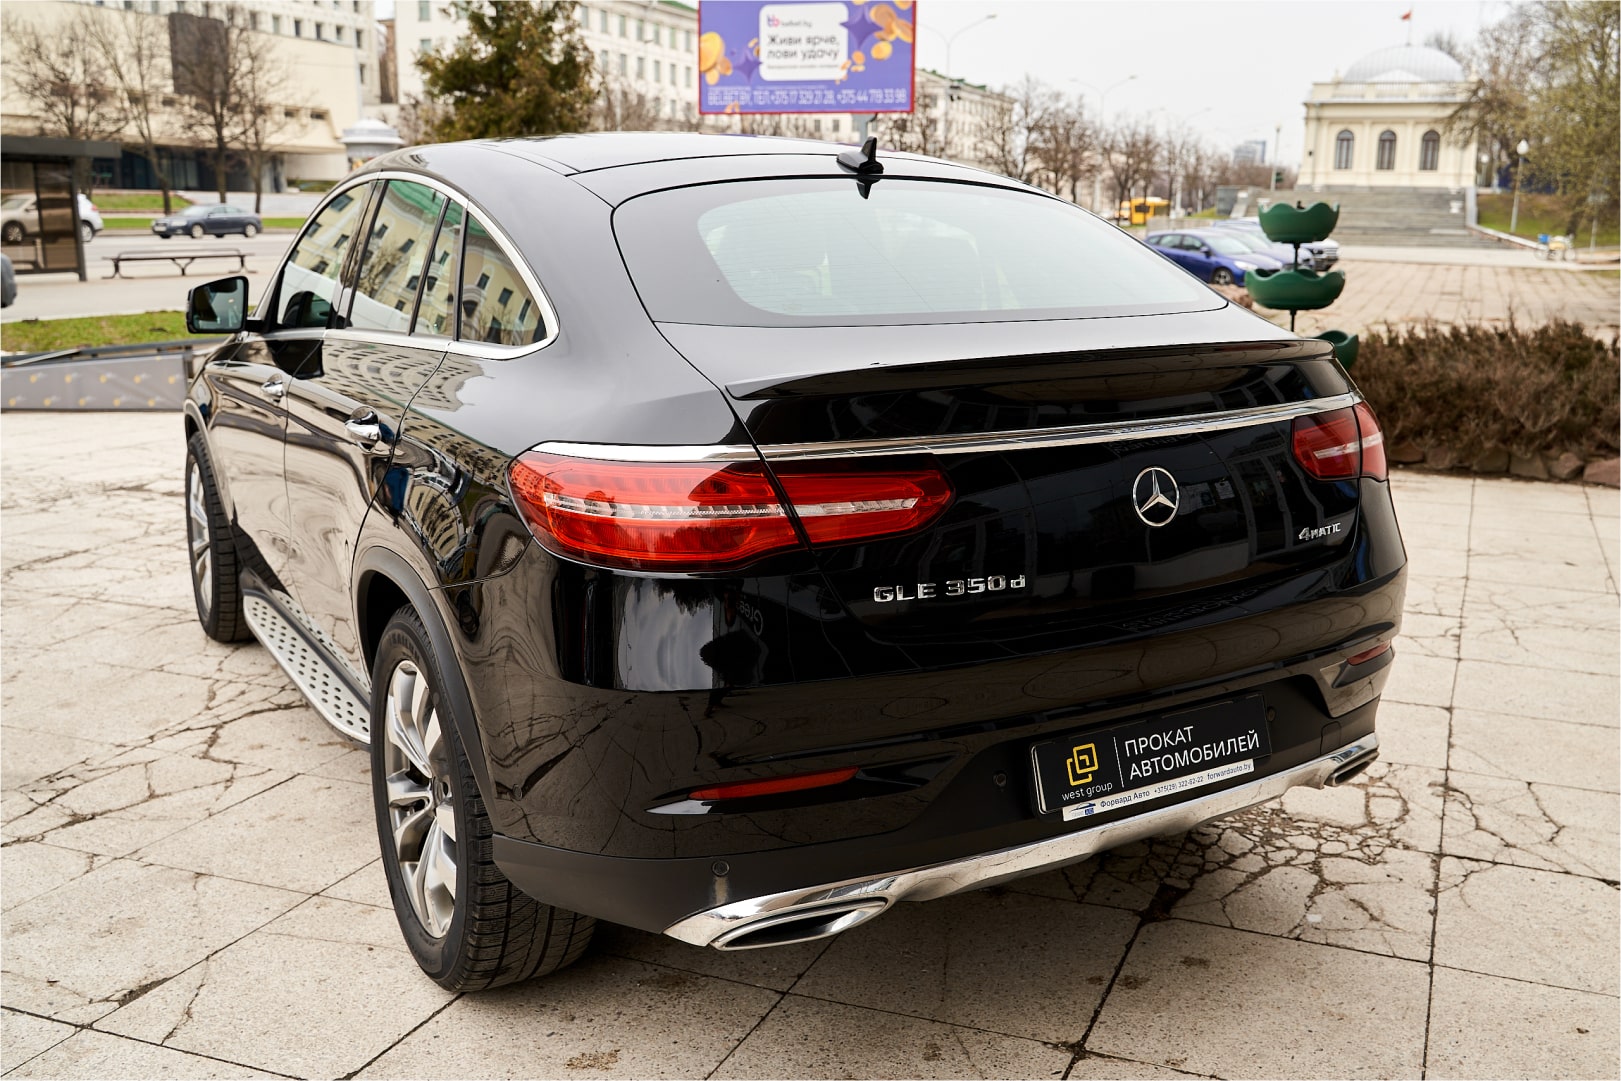 Аренда  Mercedes Benz GLE Coupe 4MATIC Limited Edition  6 класса 2018 года в городе Минск от 175 $/сутки,  двигатель: ДТ , объем 3.0 литров, КАСКО (Мультидрайв), без водителя, вид 6 - West Group